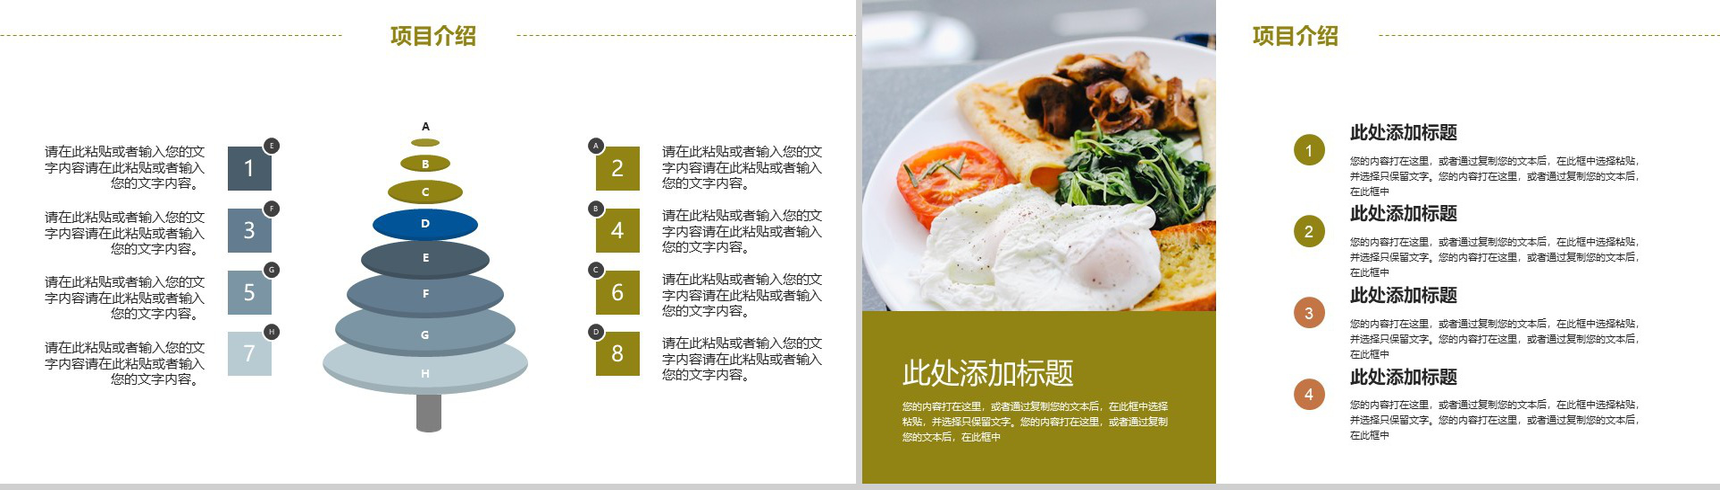 极简商务野菌美食宴项目宣传推广策划PPT模板-4